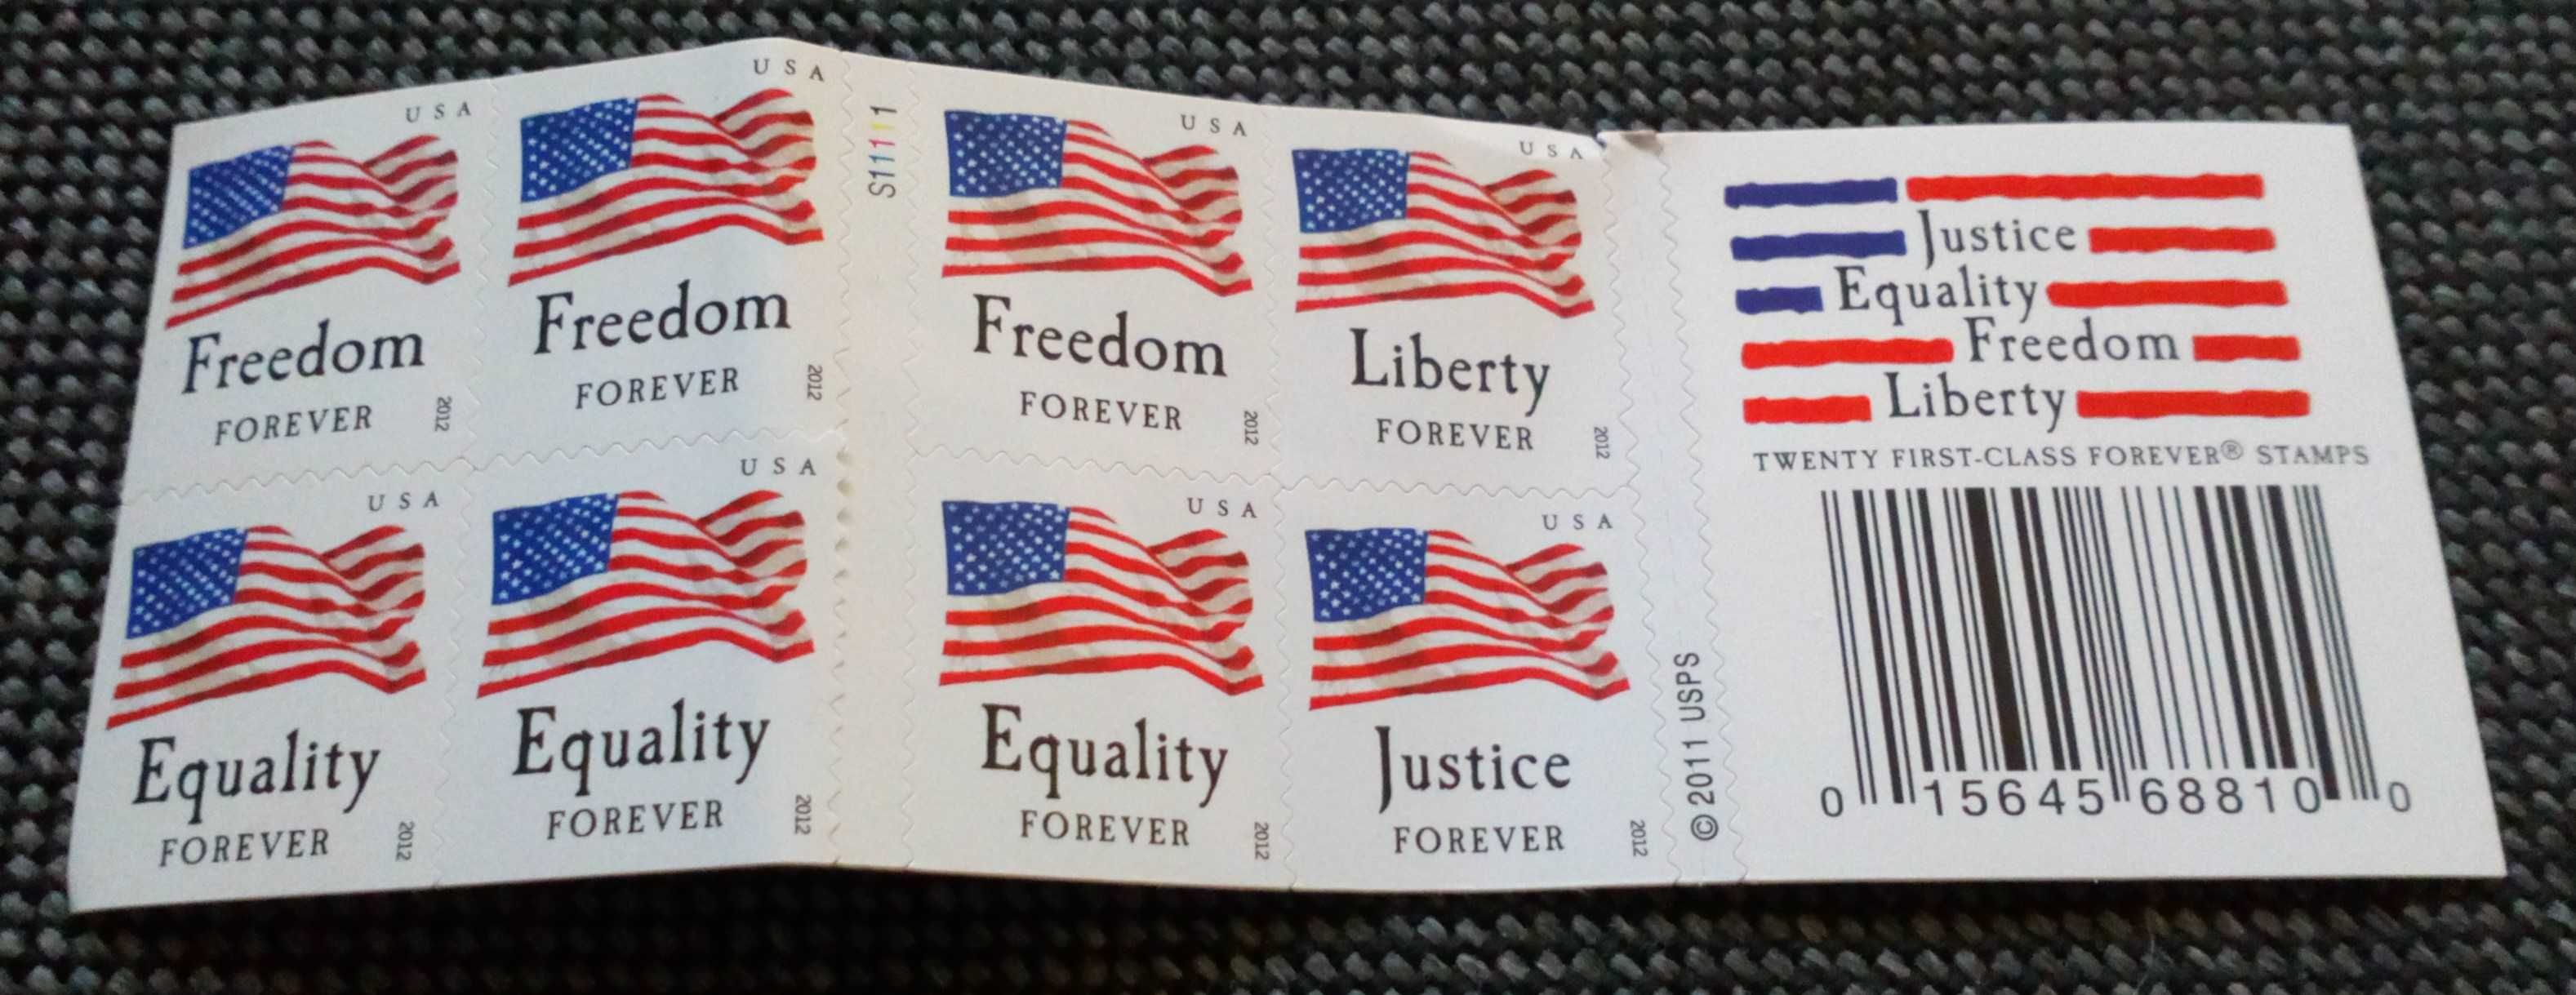 Znaczki USA 2012 Justice Equality Freedom Liberty - zestaw 12 szt.